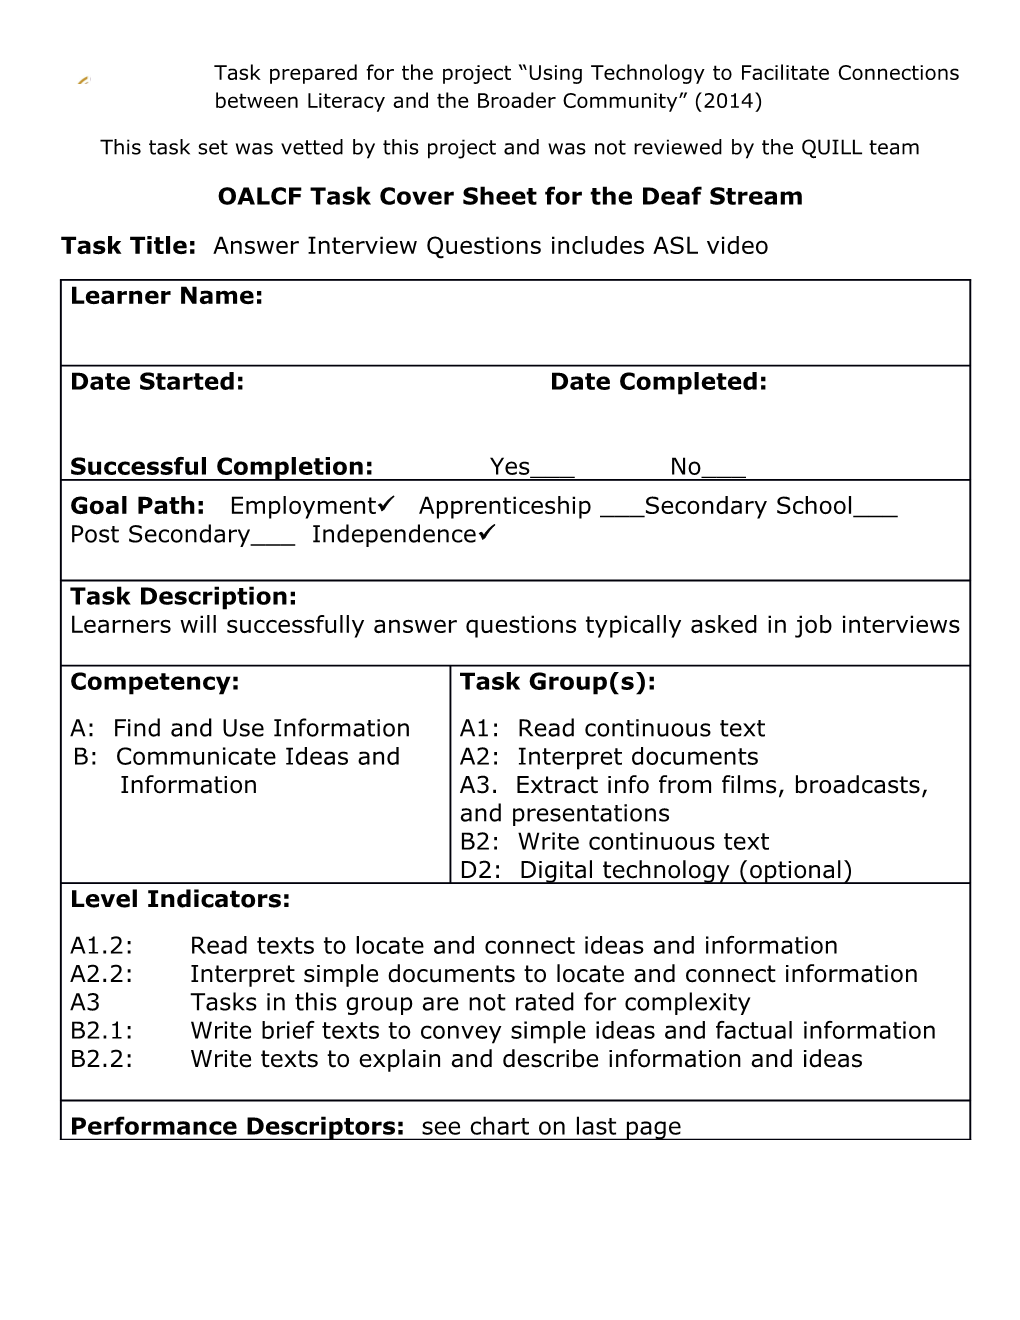 OALCF Task Cover Sheet for the Deaf Stream